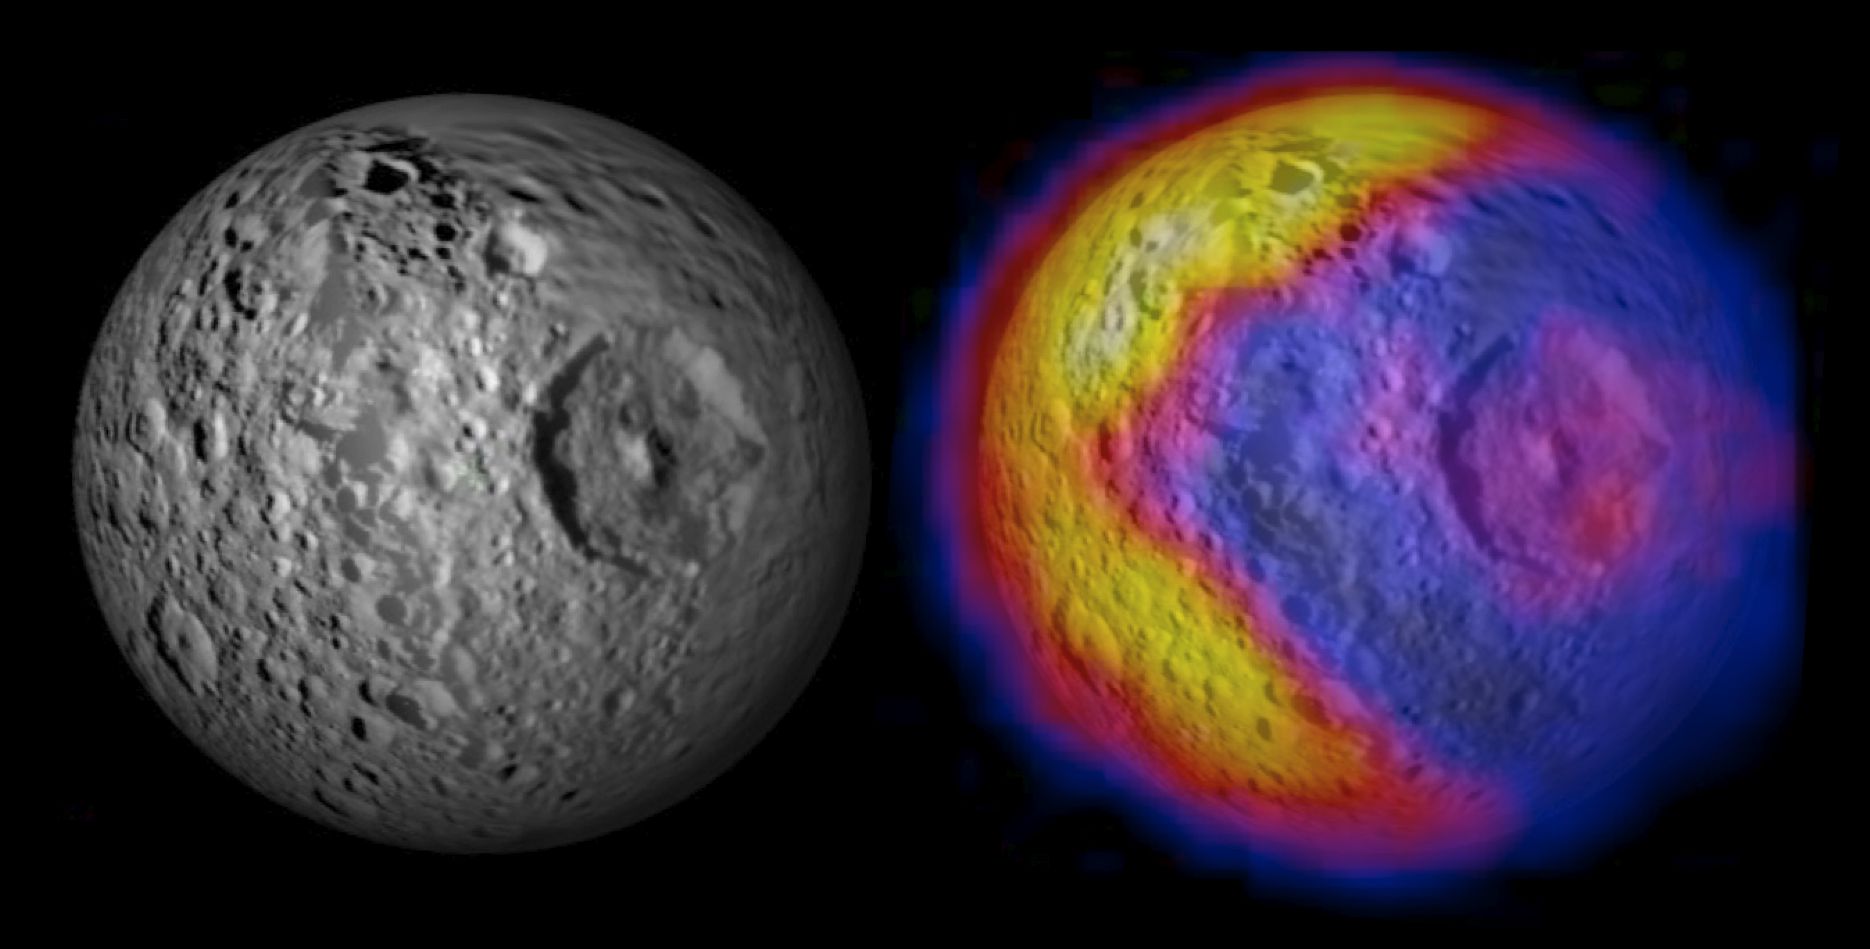 La pequeña luna interior de Saturno, Mimas, tiene temperaturas calientes y frías